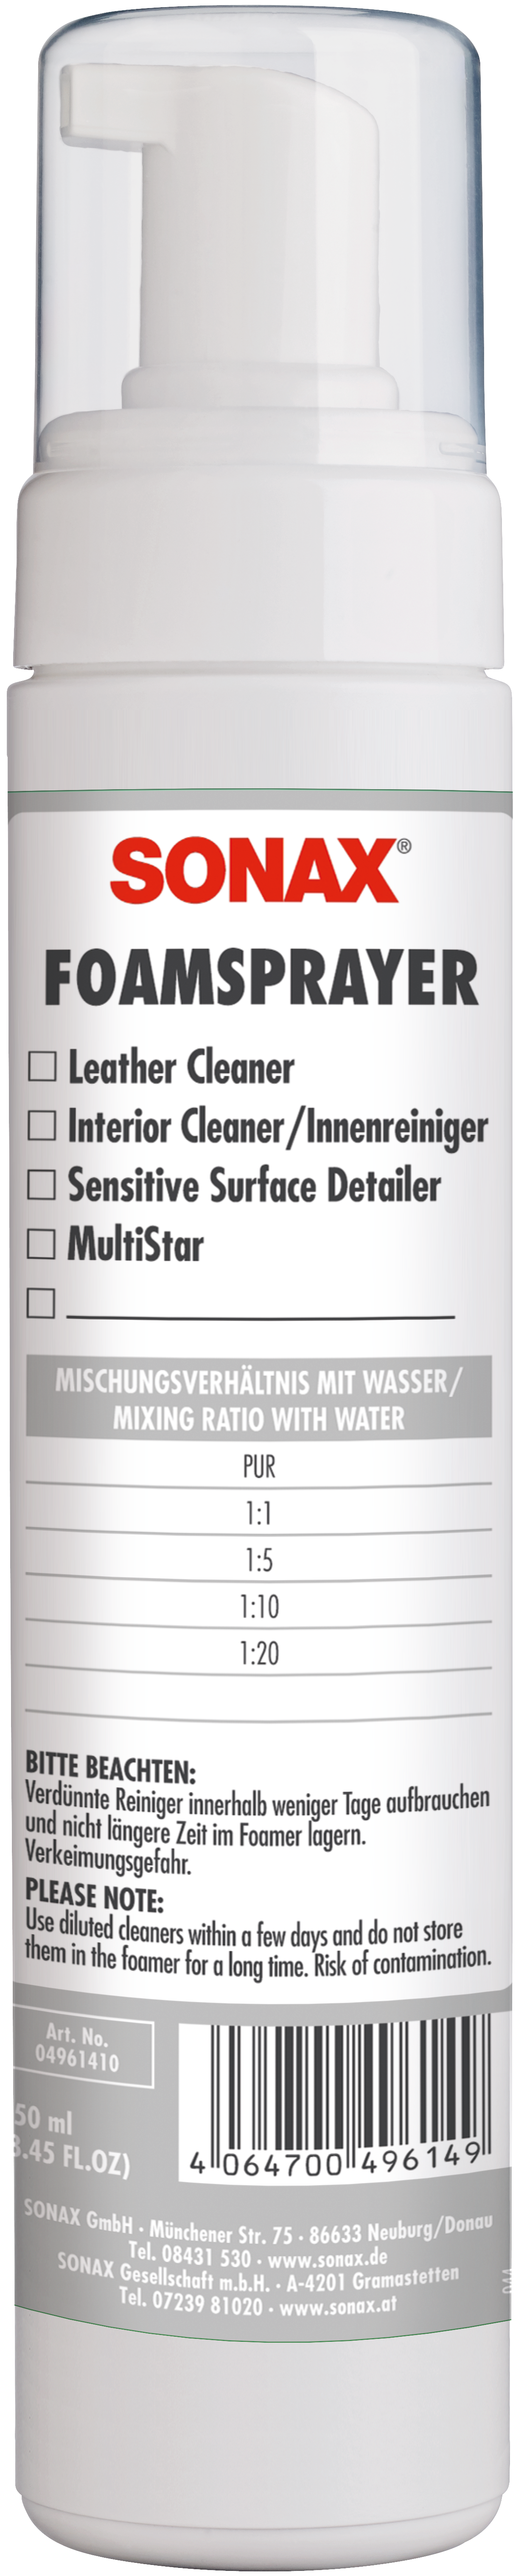 Polsterreiniger Schaum Sonax Polster Schaum Reiniger, 250ml - 306141 - Pro  Detailing